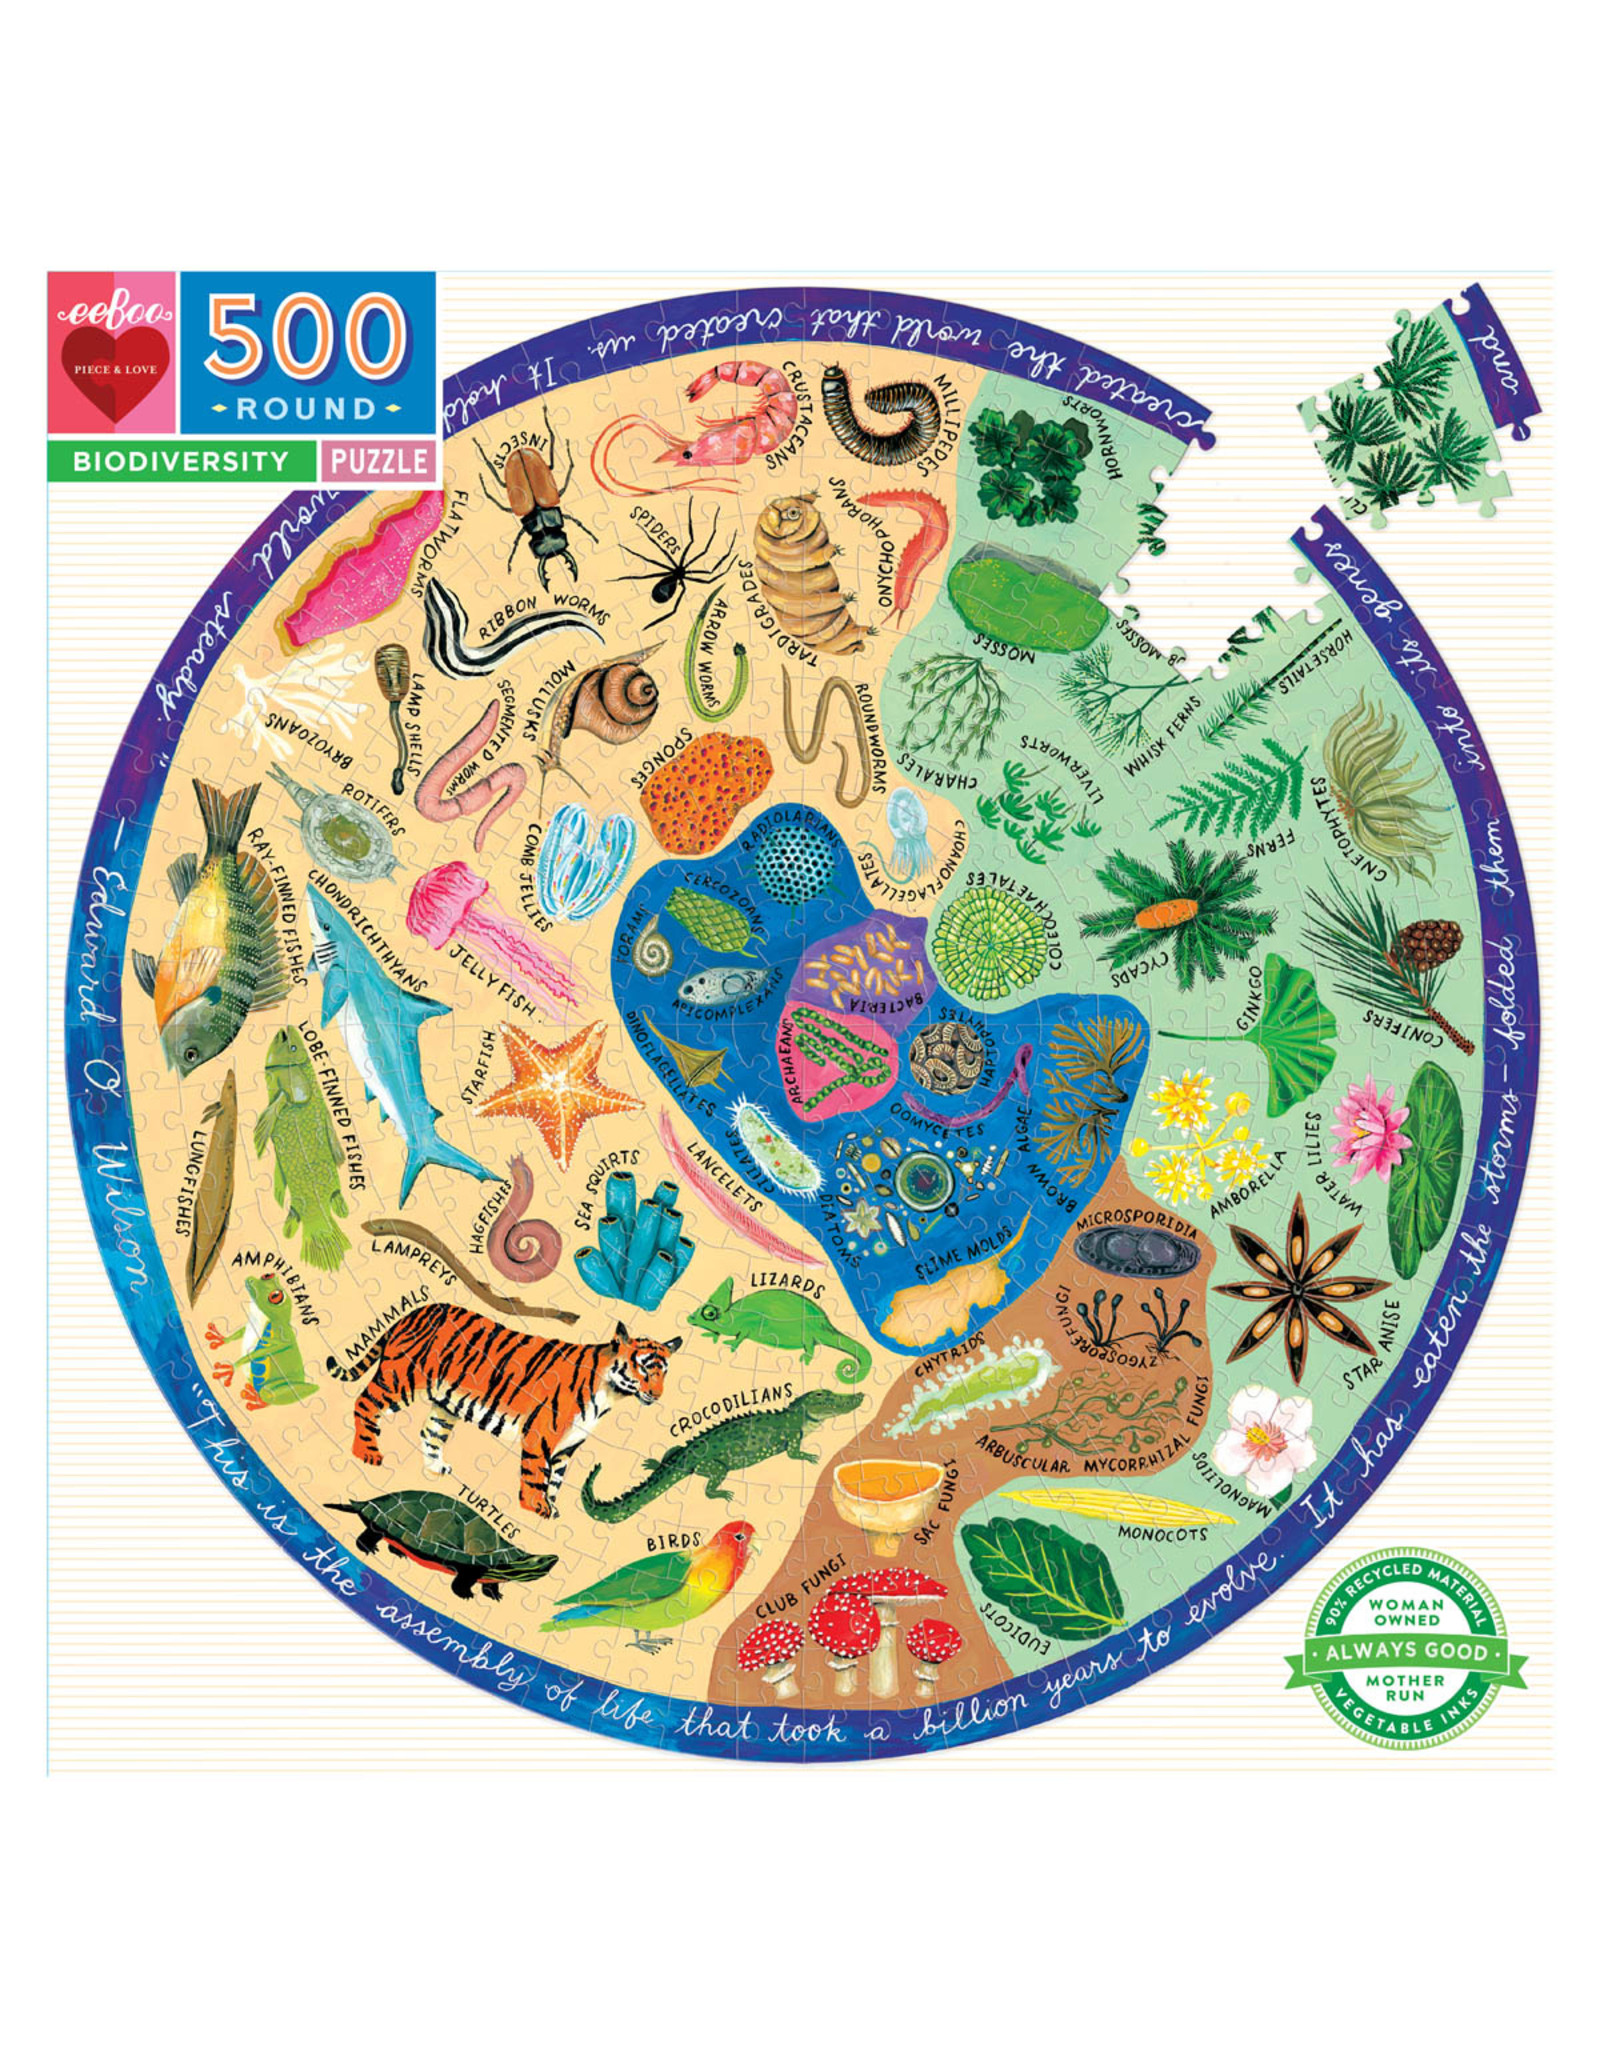 Biodiversity 500 pc